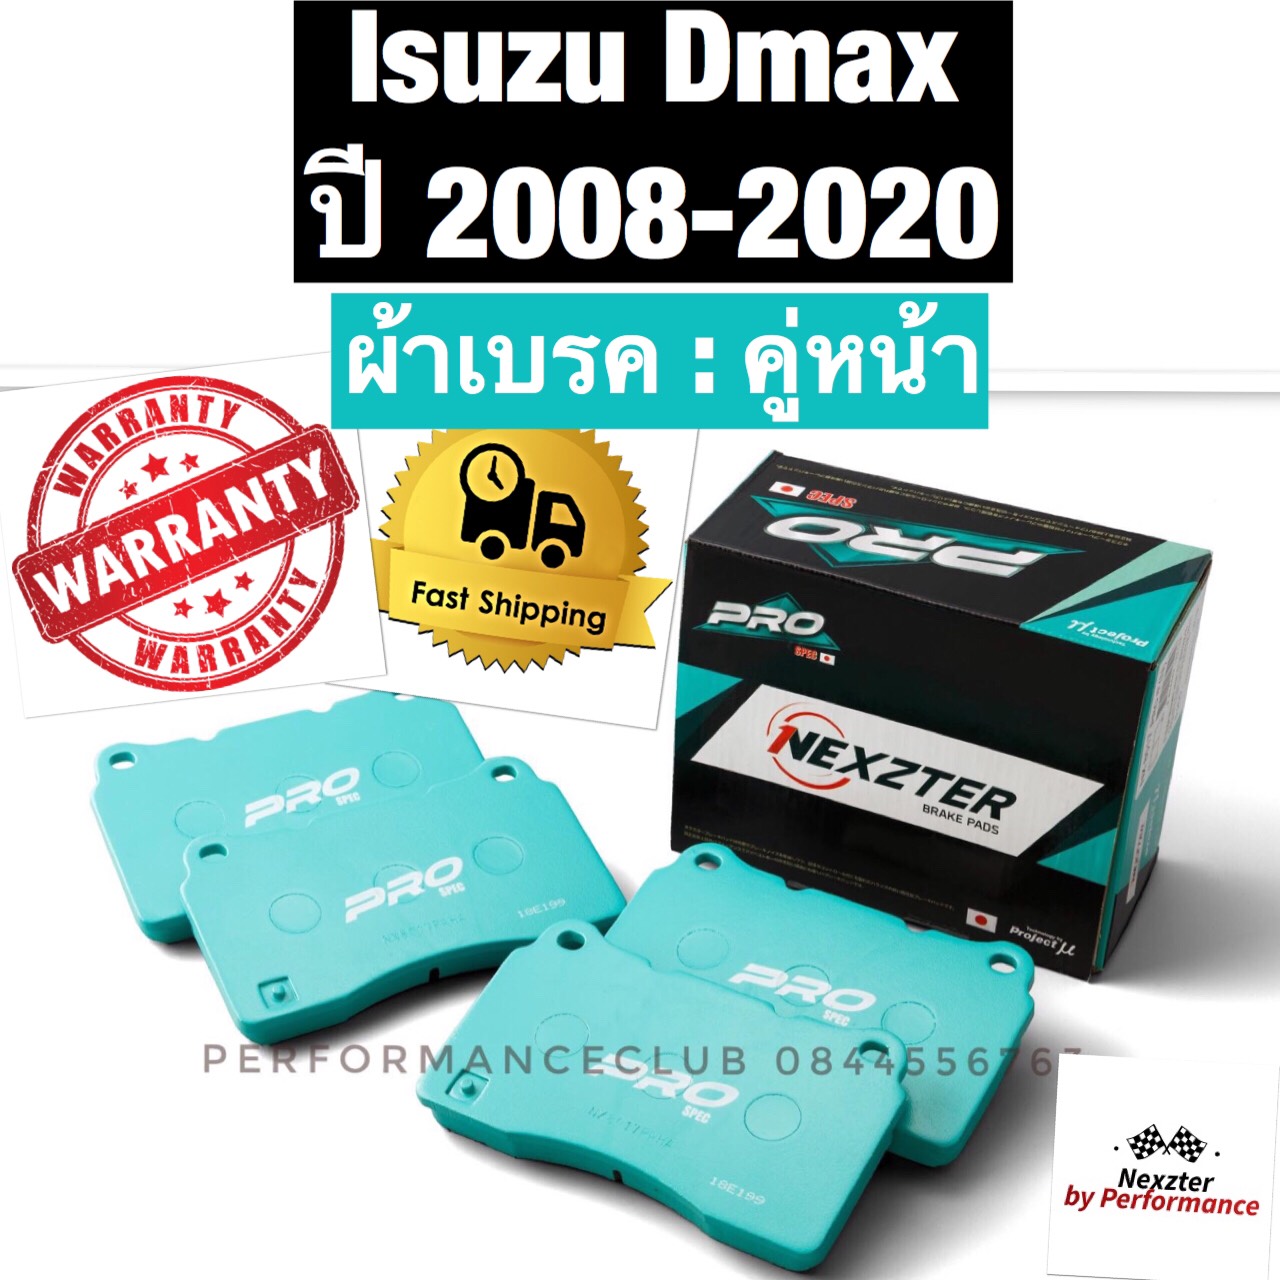 ผ้าเบรค Nexzter Prospec คู่หน้า Dmax 2008-2020